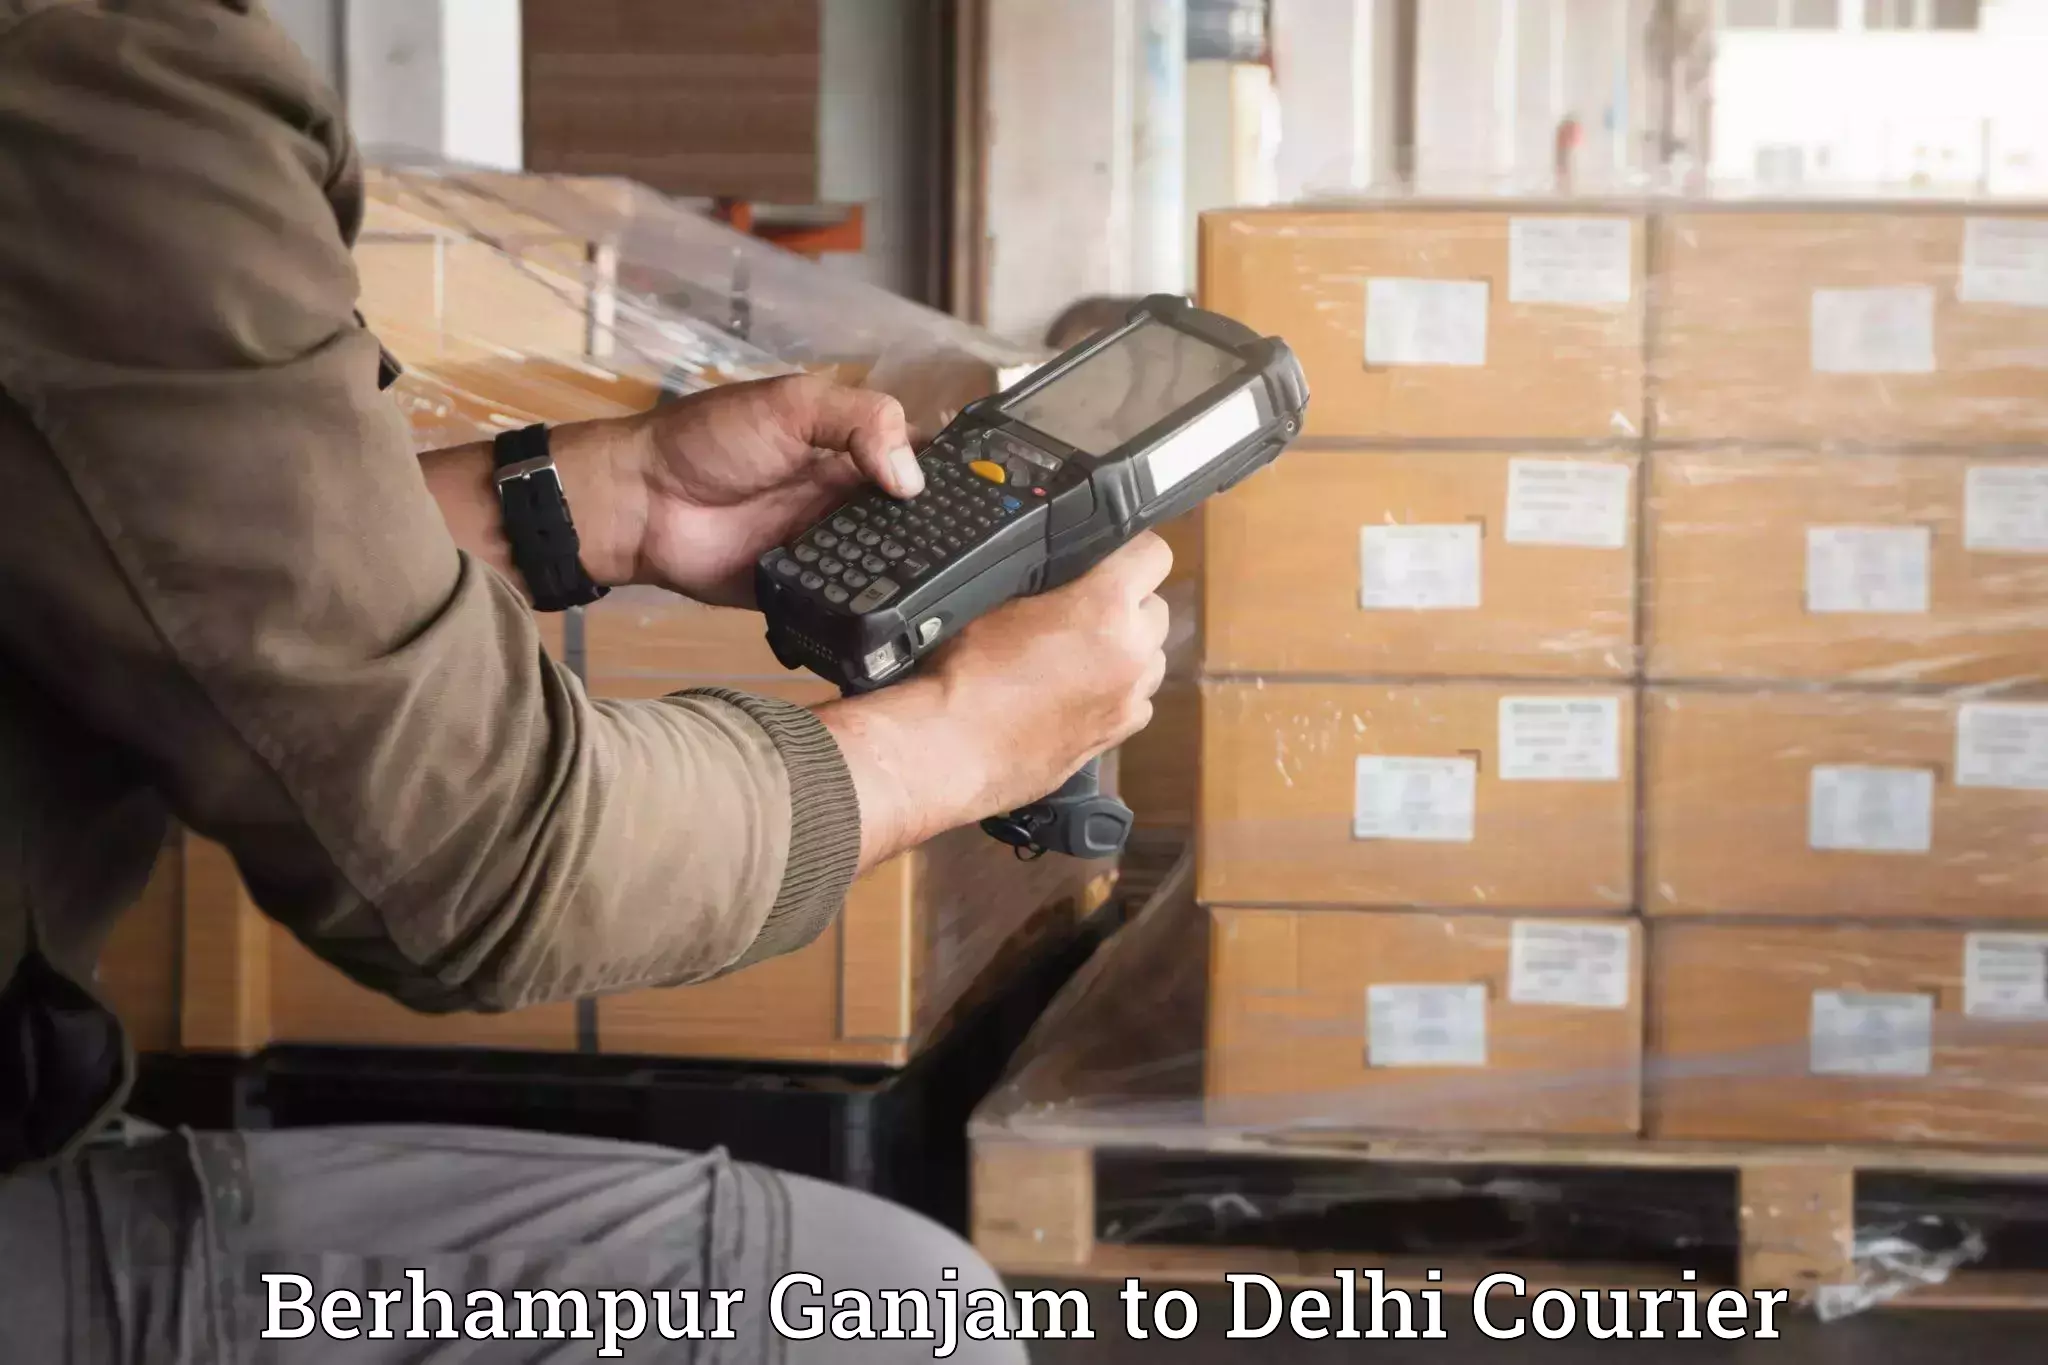 Furniture relocation experts Berhampur Ganjam to Subhash Nagar